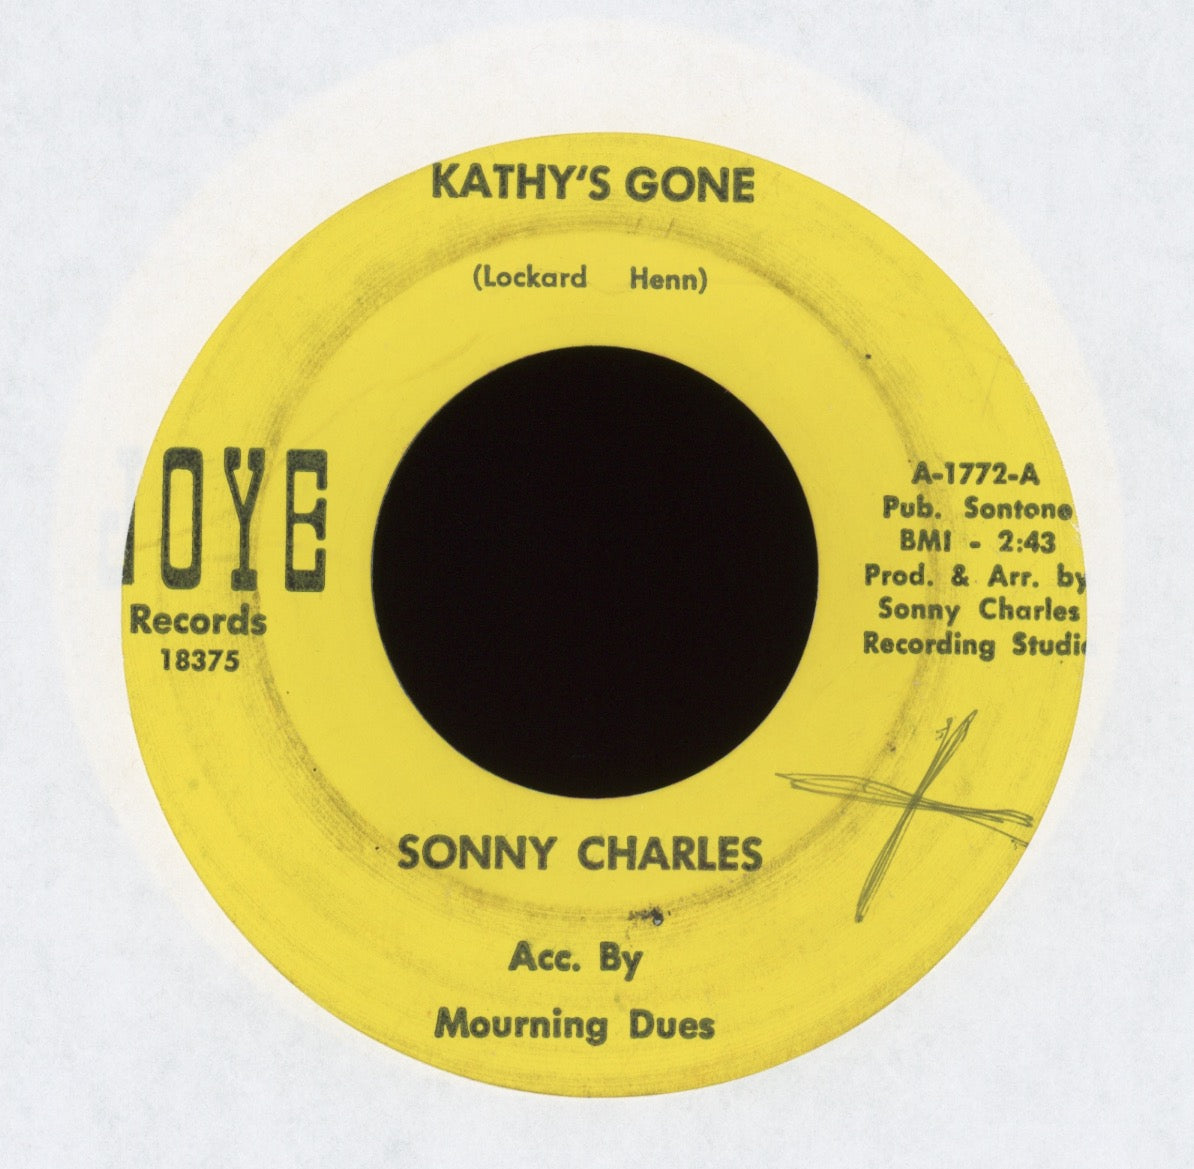 Sonny Charles - Kathy's Gone on JOYE Teen 45